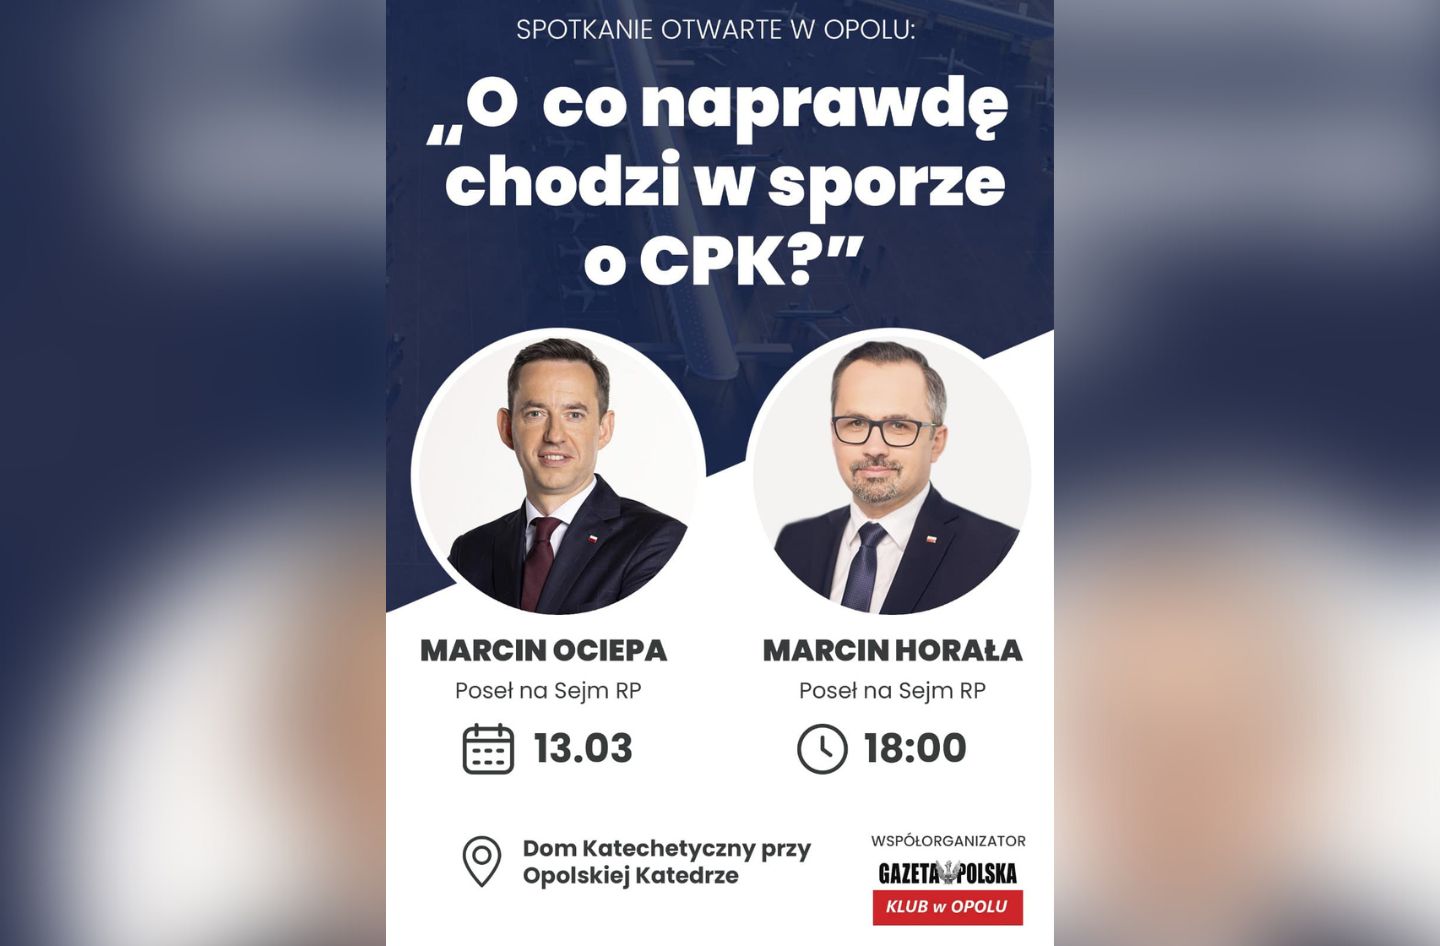 CPK, debata, Marcin Ociepa, Marcin Horała